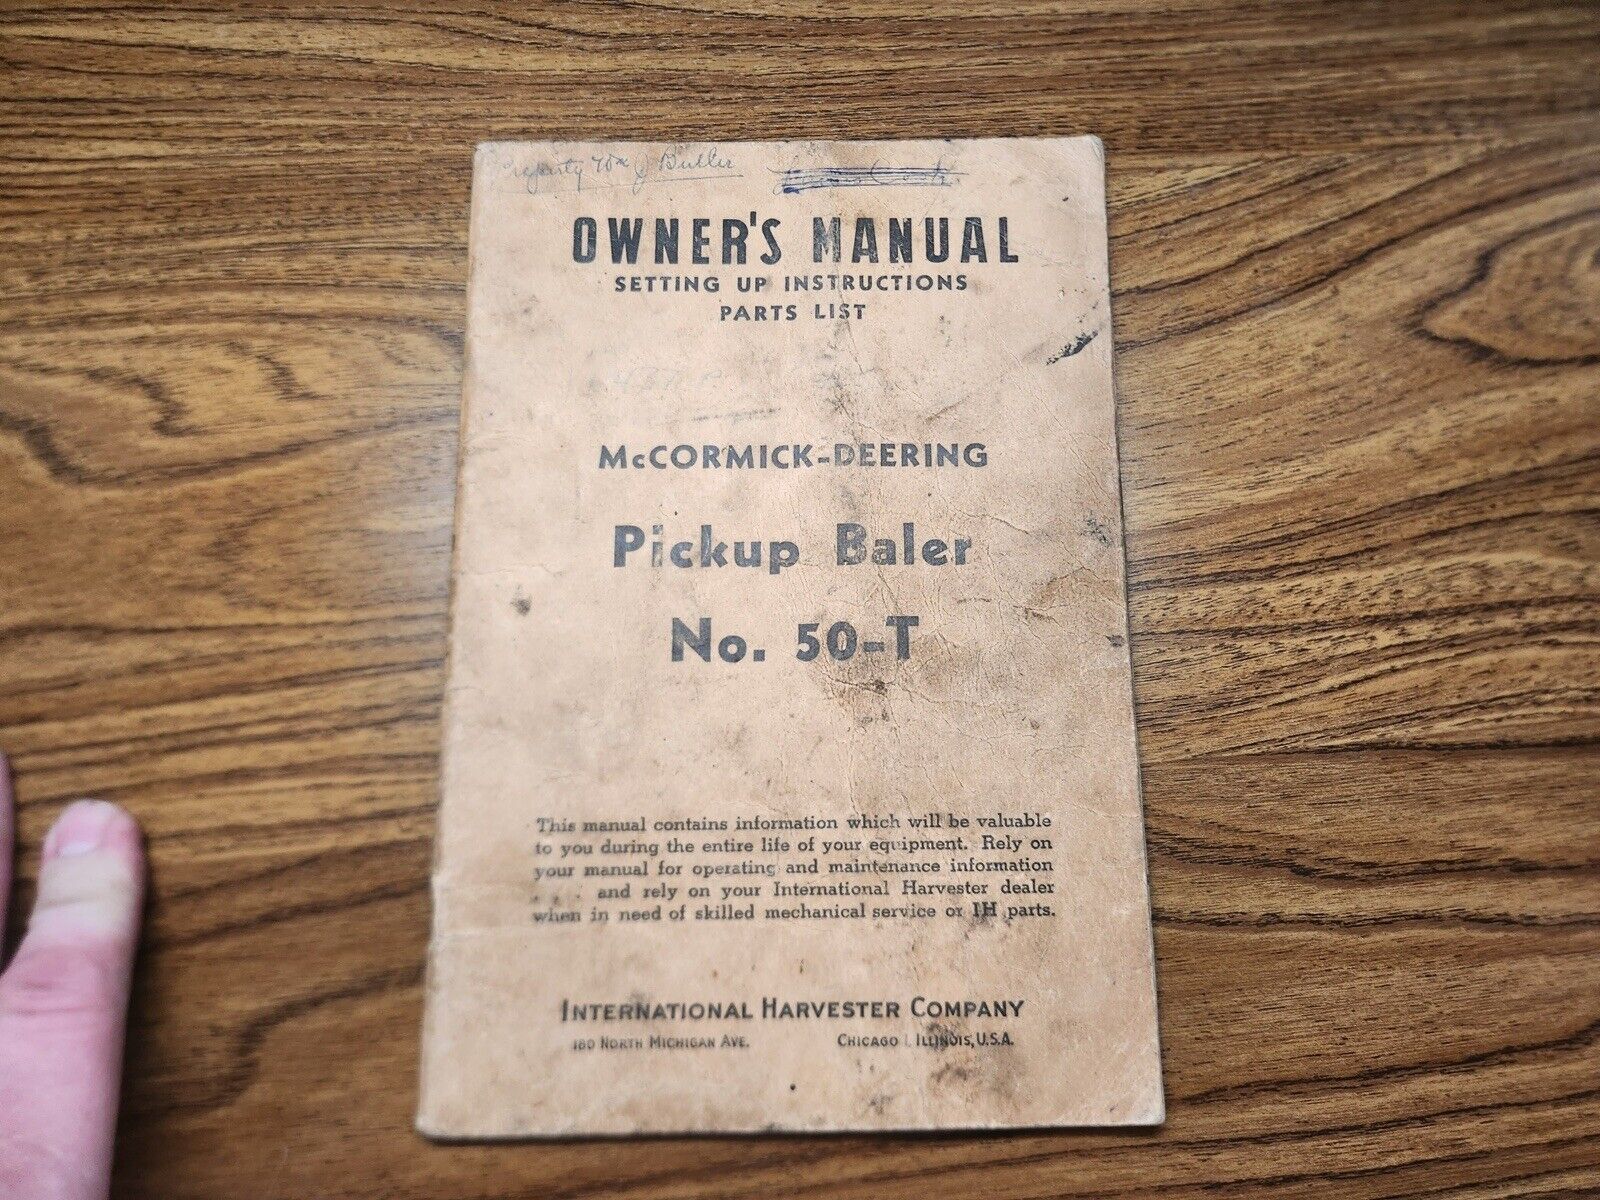 Vintage McCormick-Deering Pickup Baker No 50-T  Owners Manual